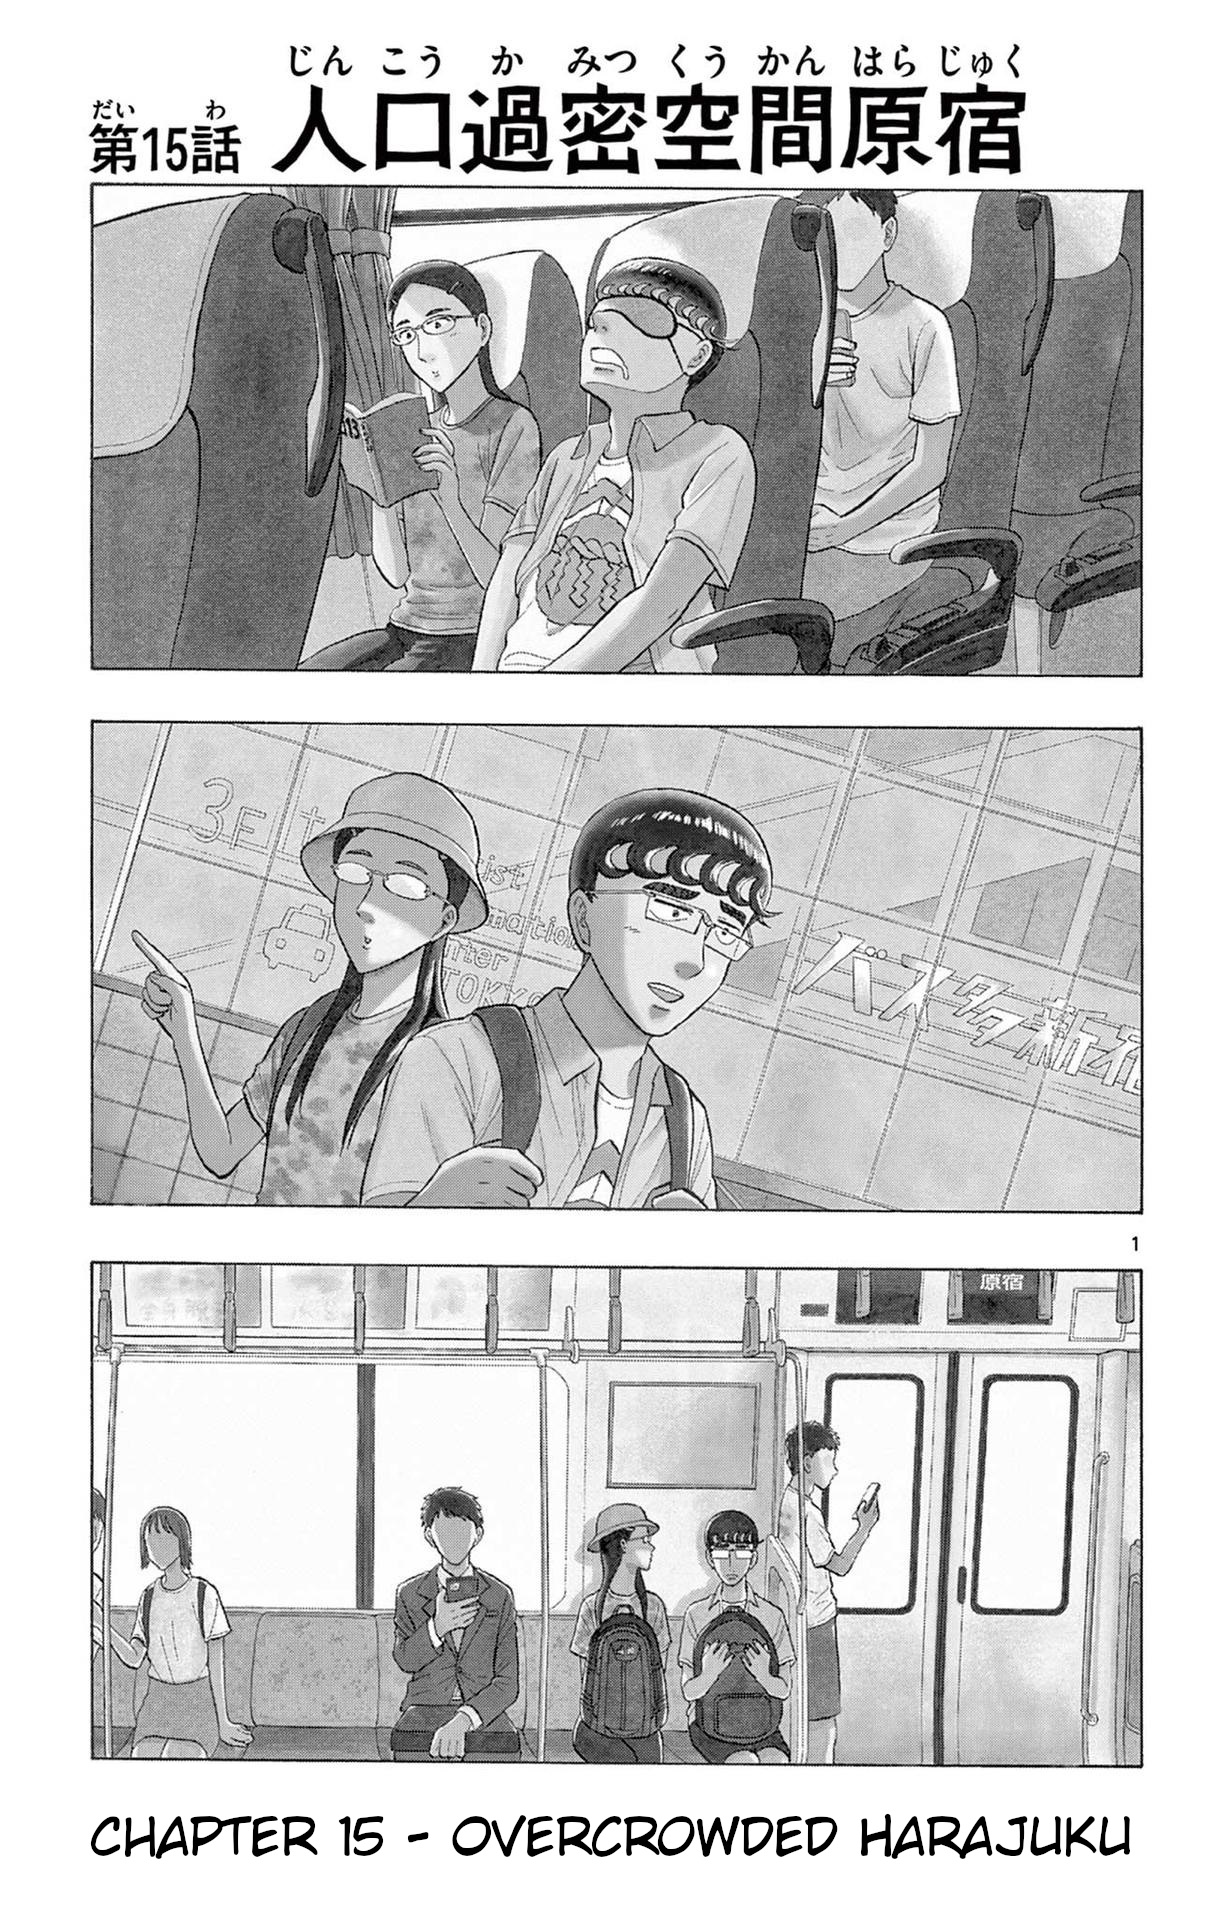 Shiroyama To Mita-San Vol.2 Chapter 15: Overcrowded Harajuku - Picture 1